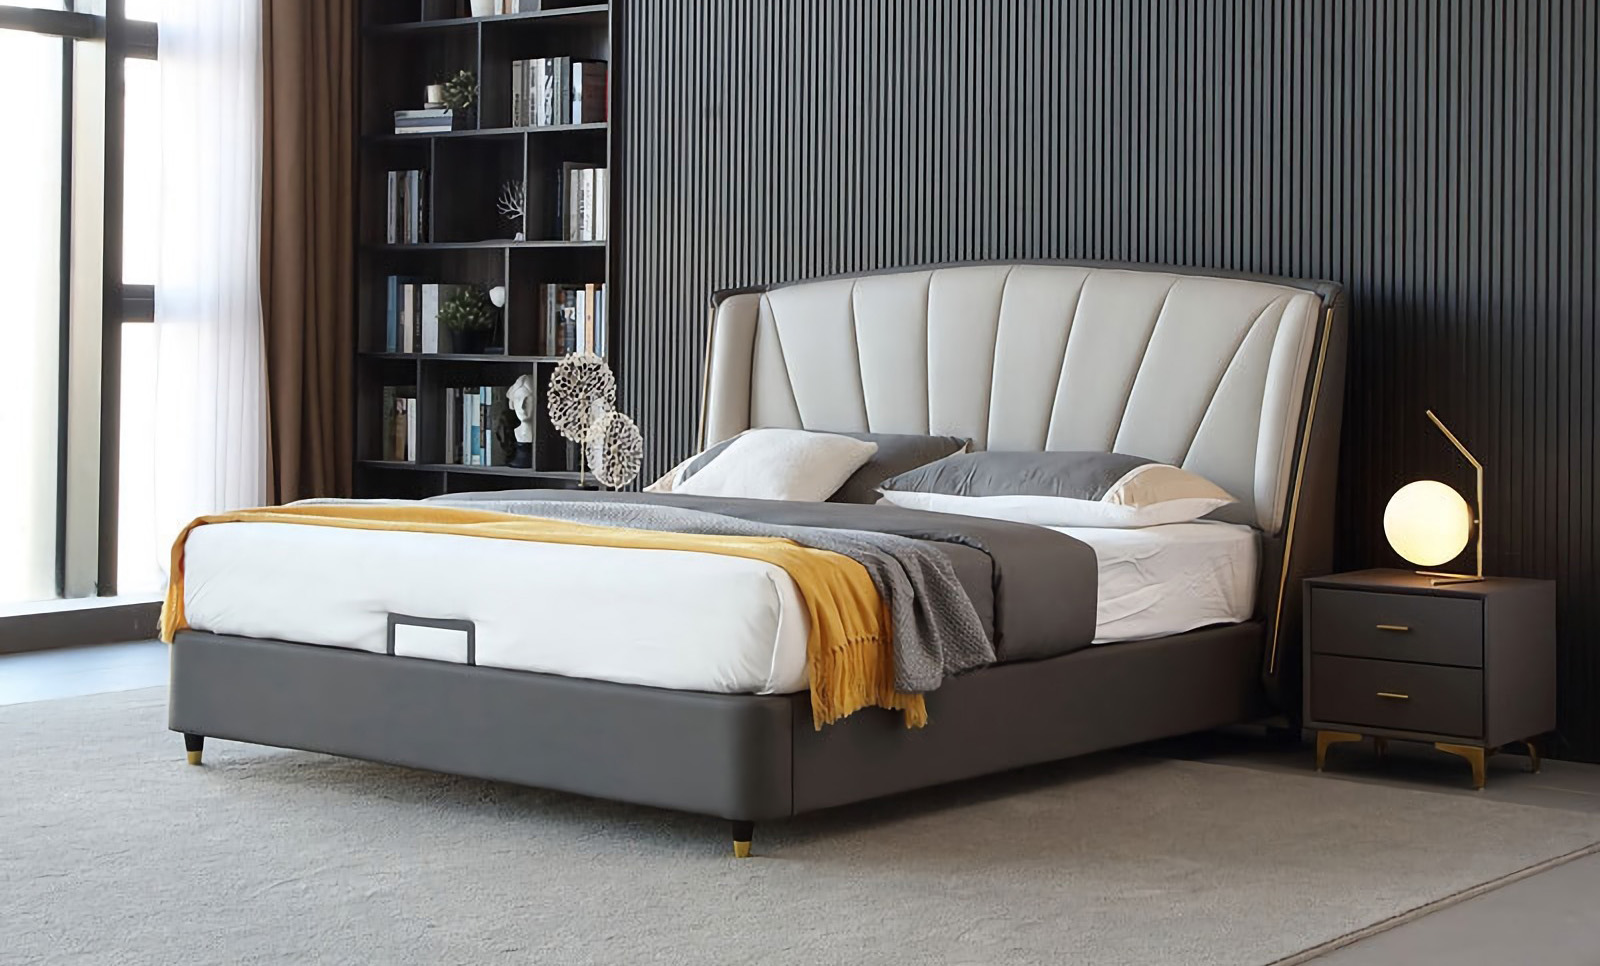 Đặc điểm thiết kế giường ngủ tối giản hiện đại của giường ngủ tối giản hiện đại.